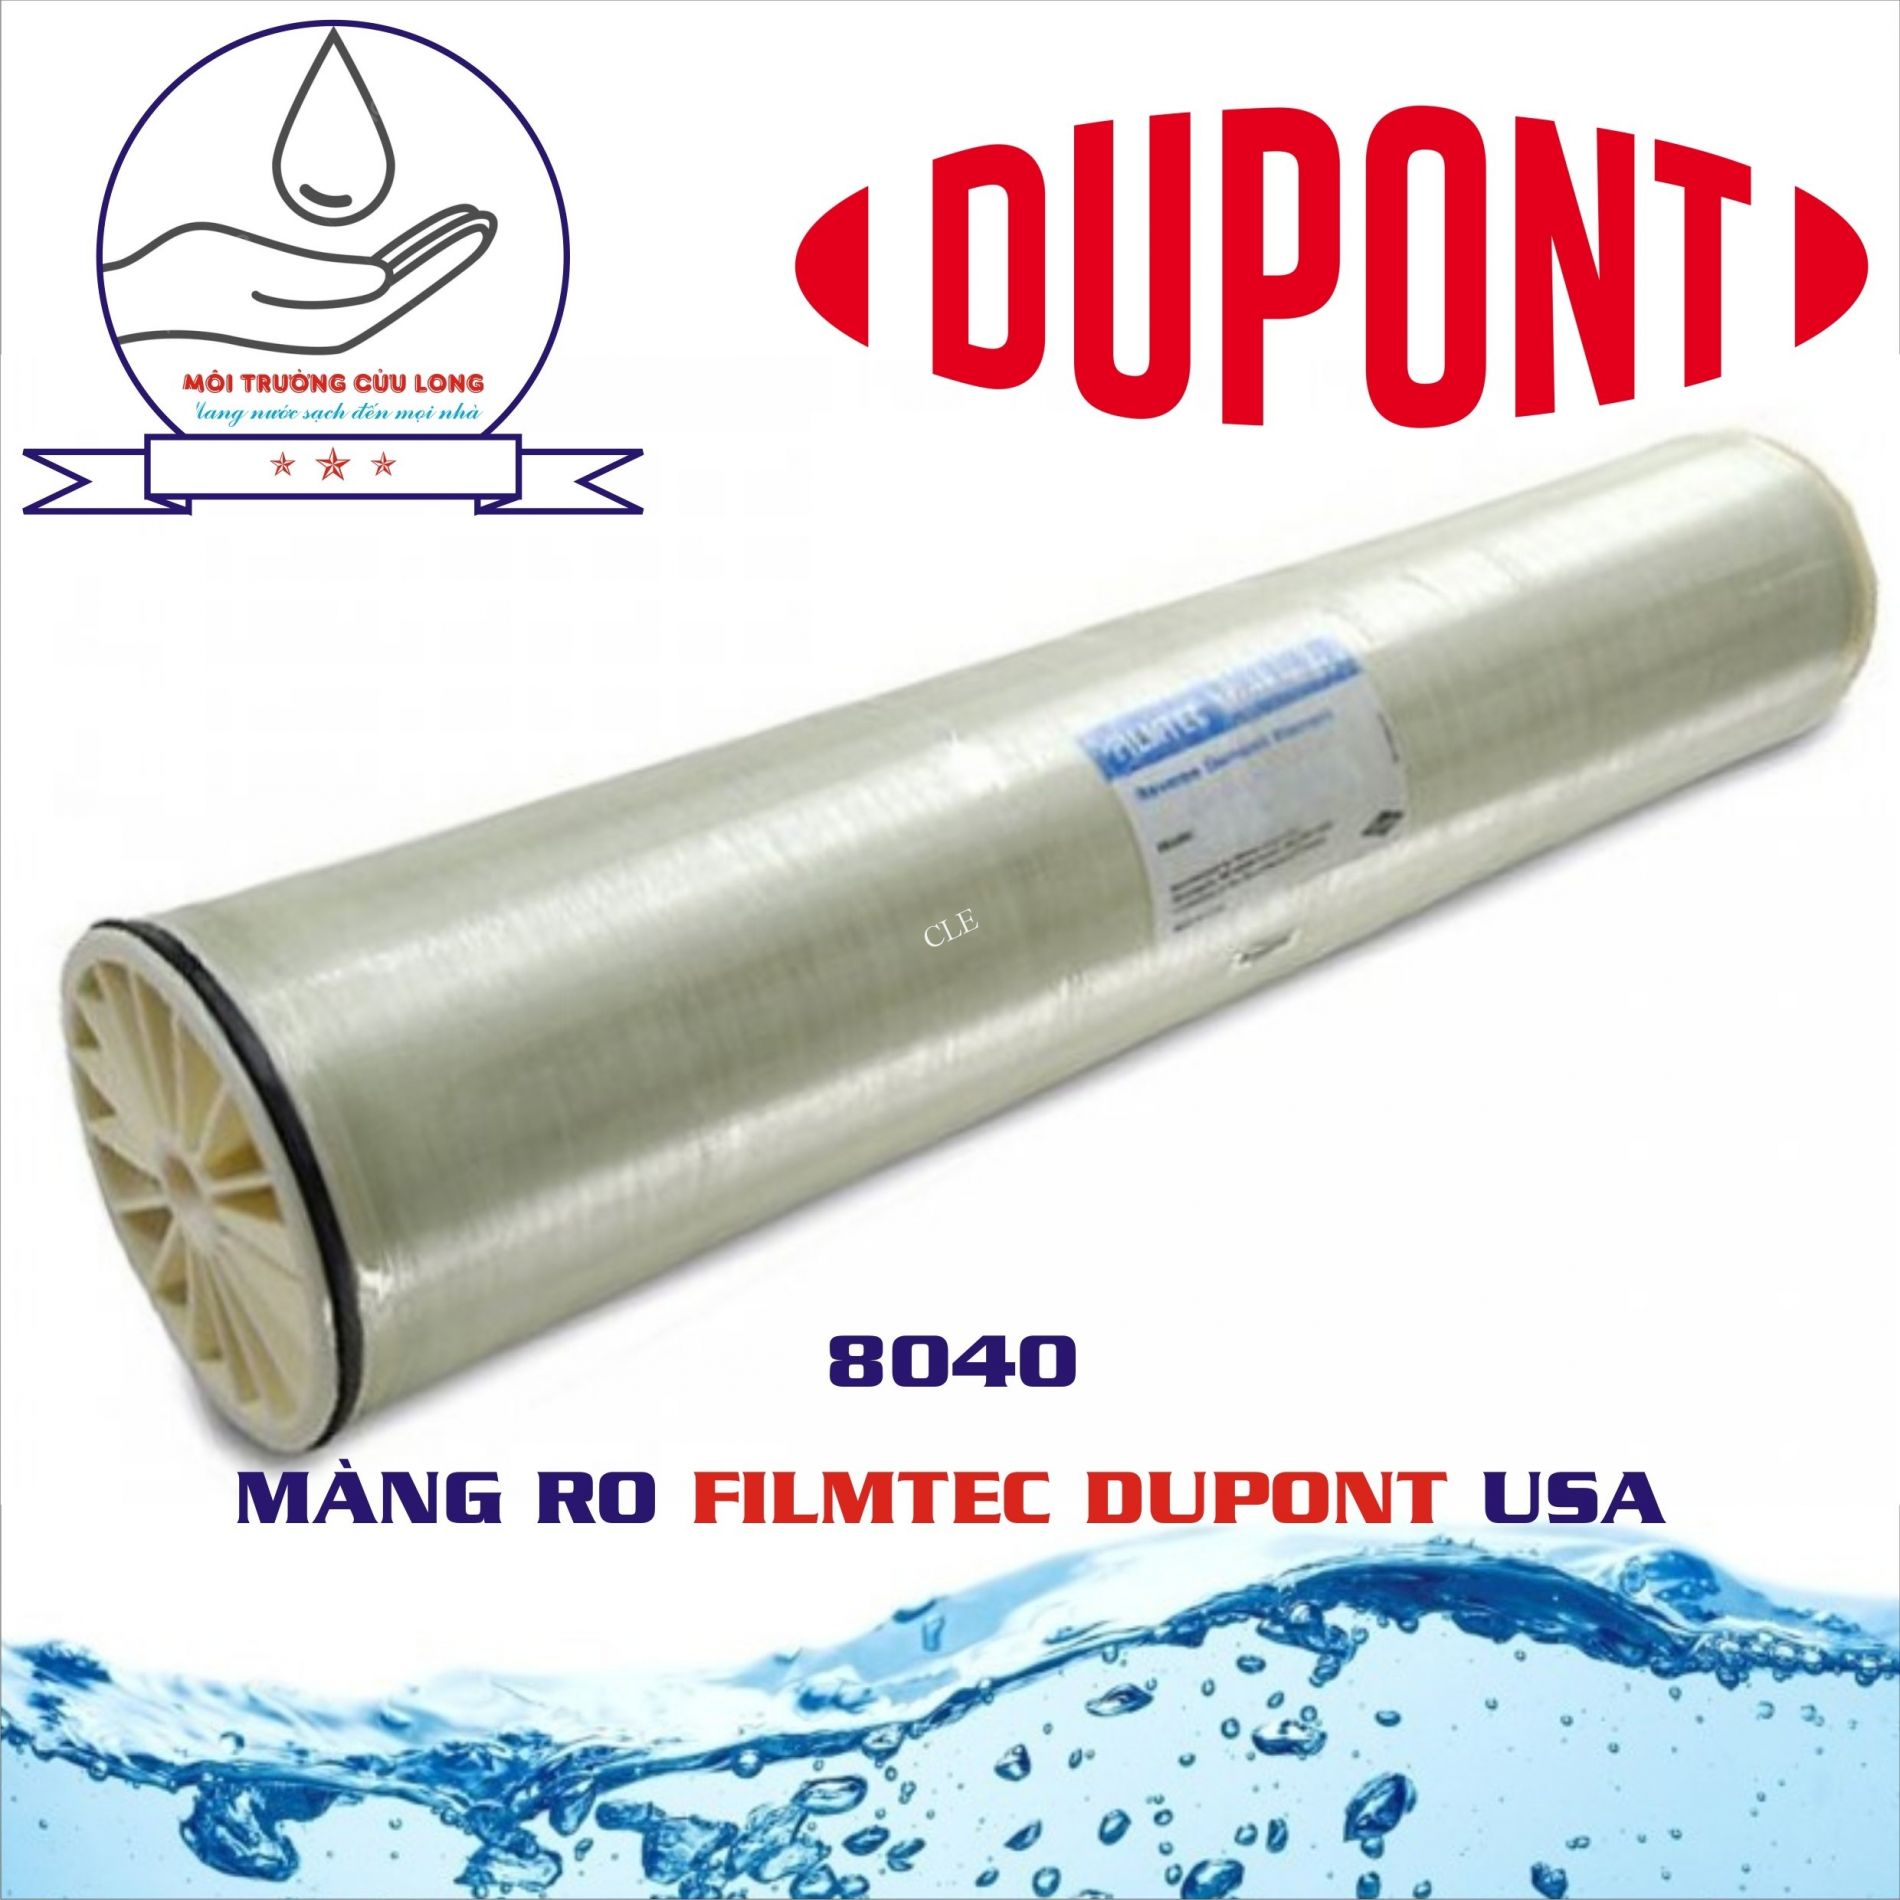 Màng RO Dupont Filmtec 8040 - BW30PRO-400 (Áp cao) - Nhập khẩu USA